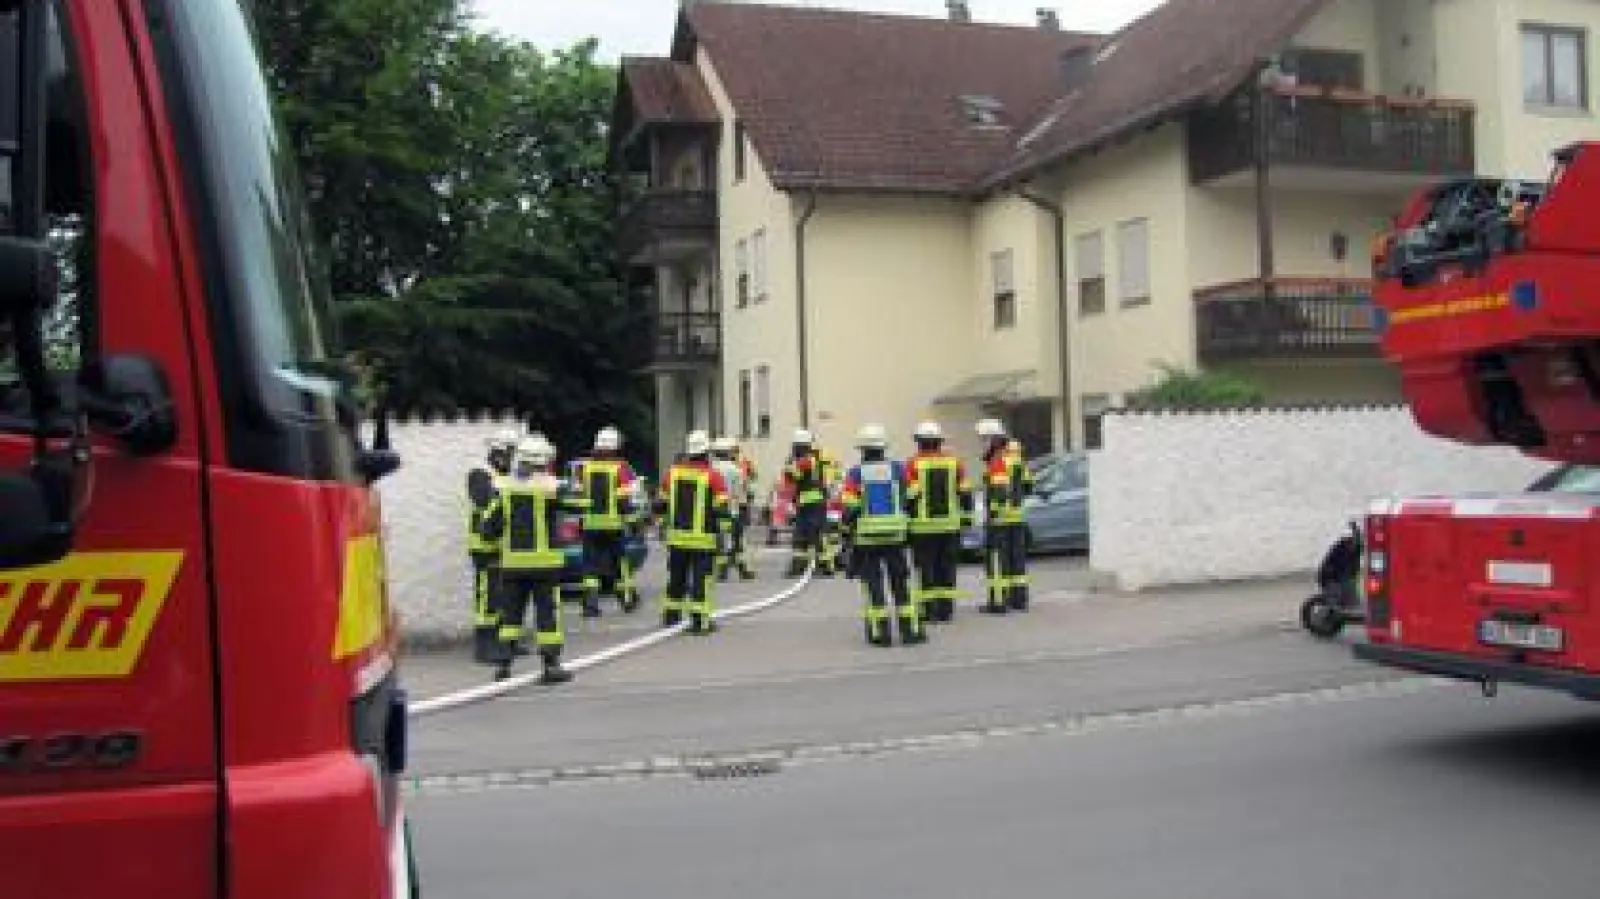 Am Freitagmorgen   kam es in einem Mehrfamilienhaus an der Freisinger Straße in Aichach zu einem Wohnungsbrand. Eine 71-jährige Frau, die schwerste Brandverletzungen erlitten hatte, starb später im Krankenhaus. 	Foto: Ines Speck (Foto: Ines Speck)